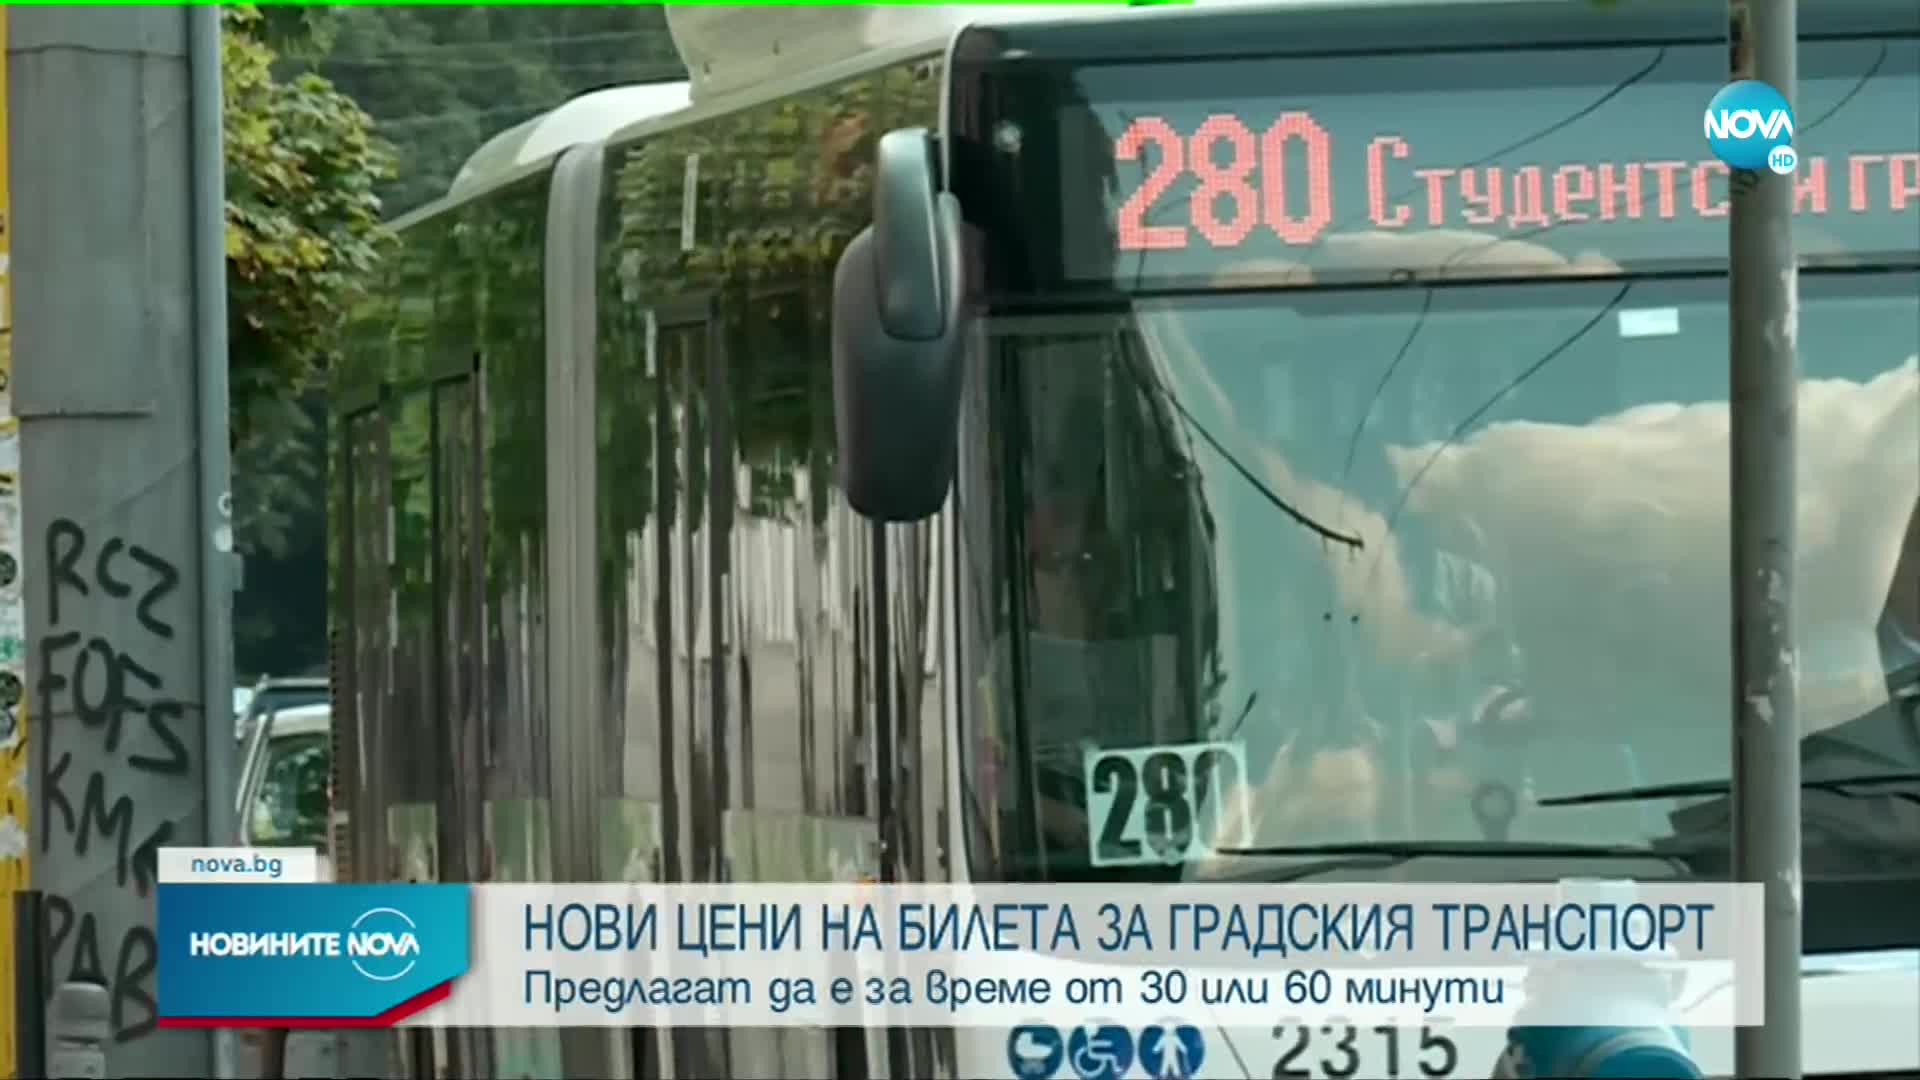 СОС предлага нови цени на билетите за градски транспорт в София